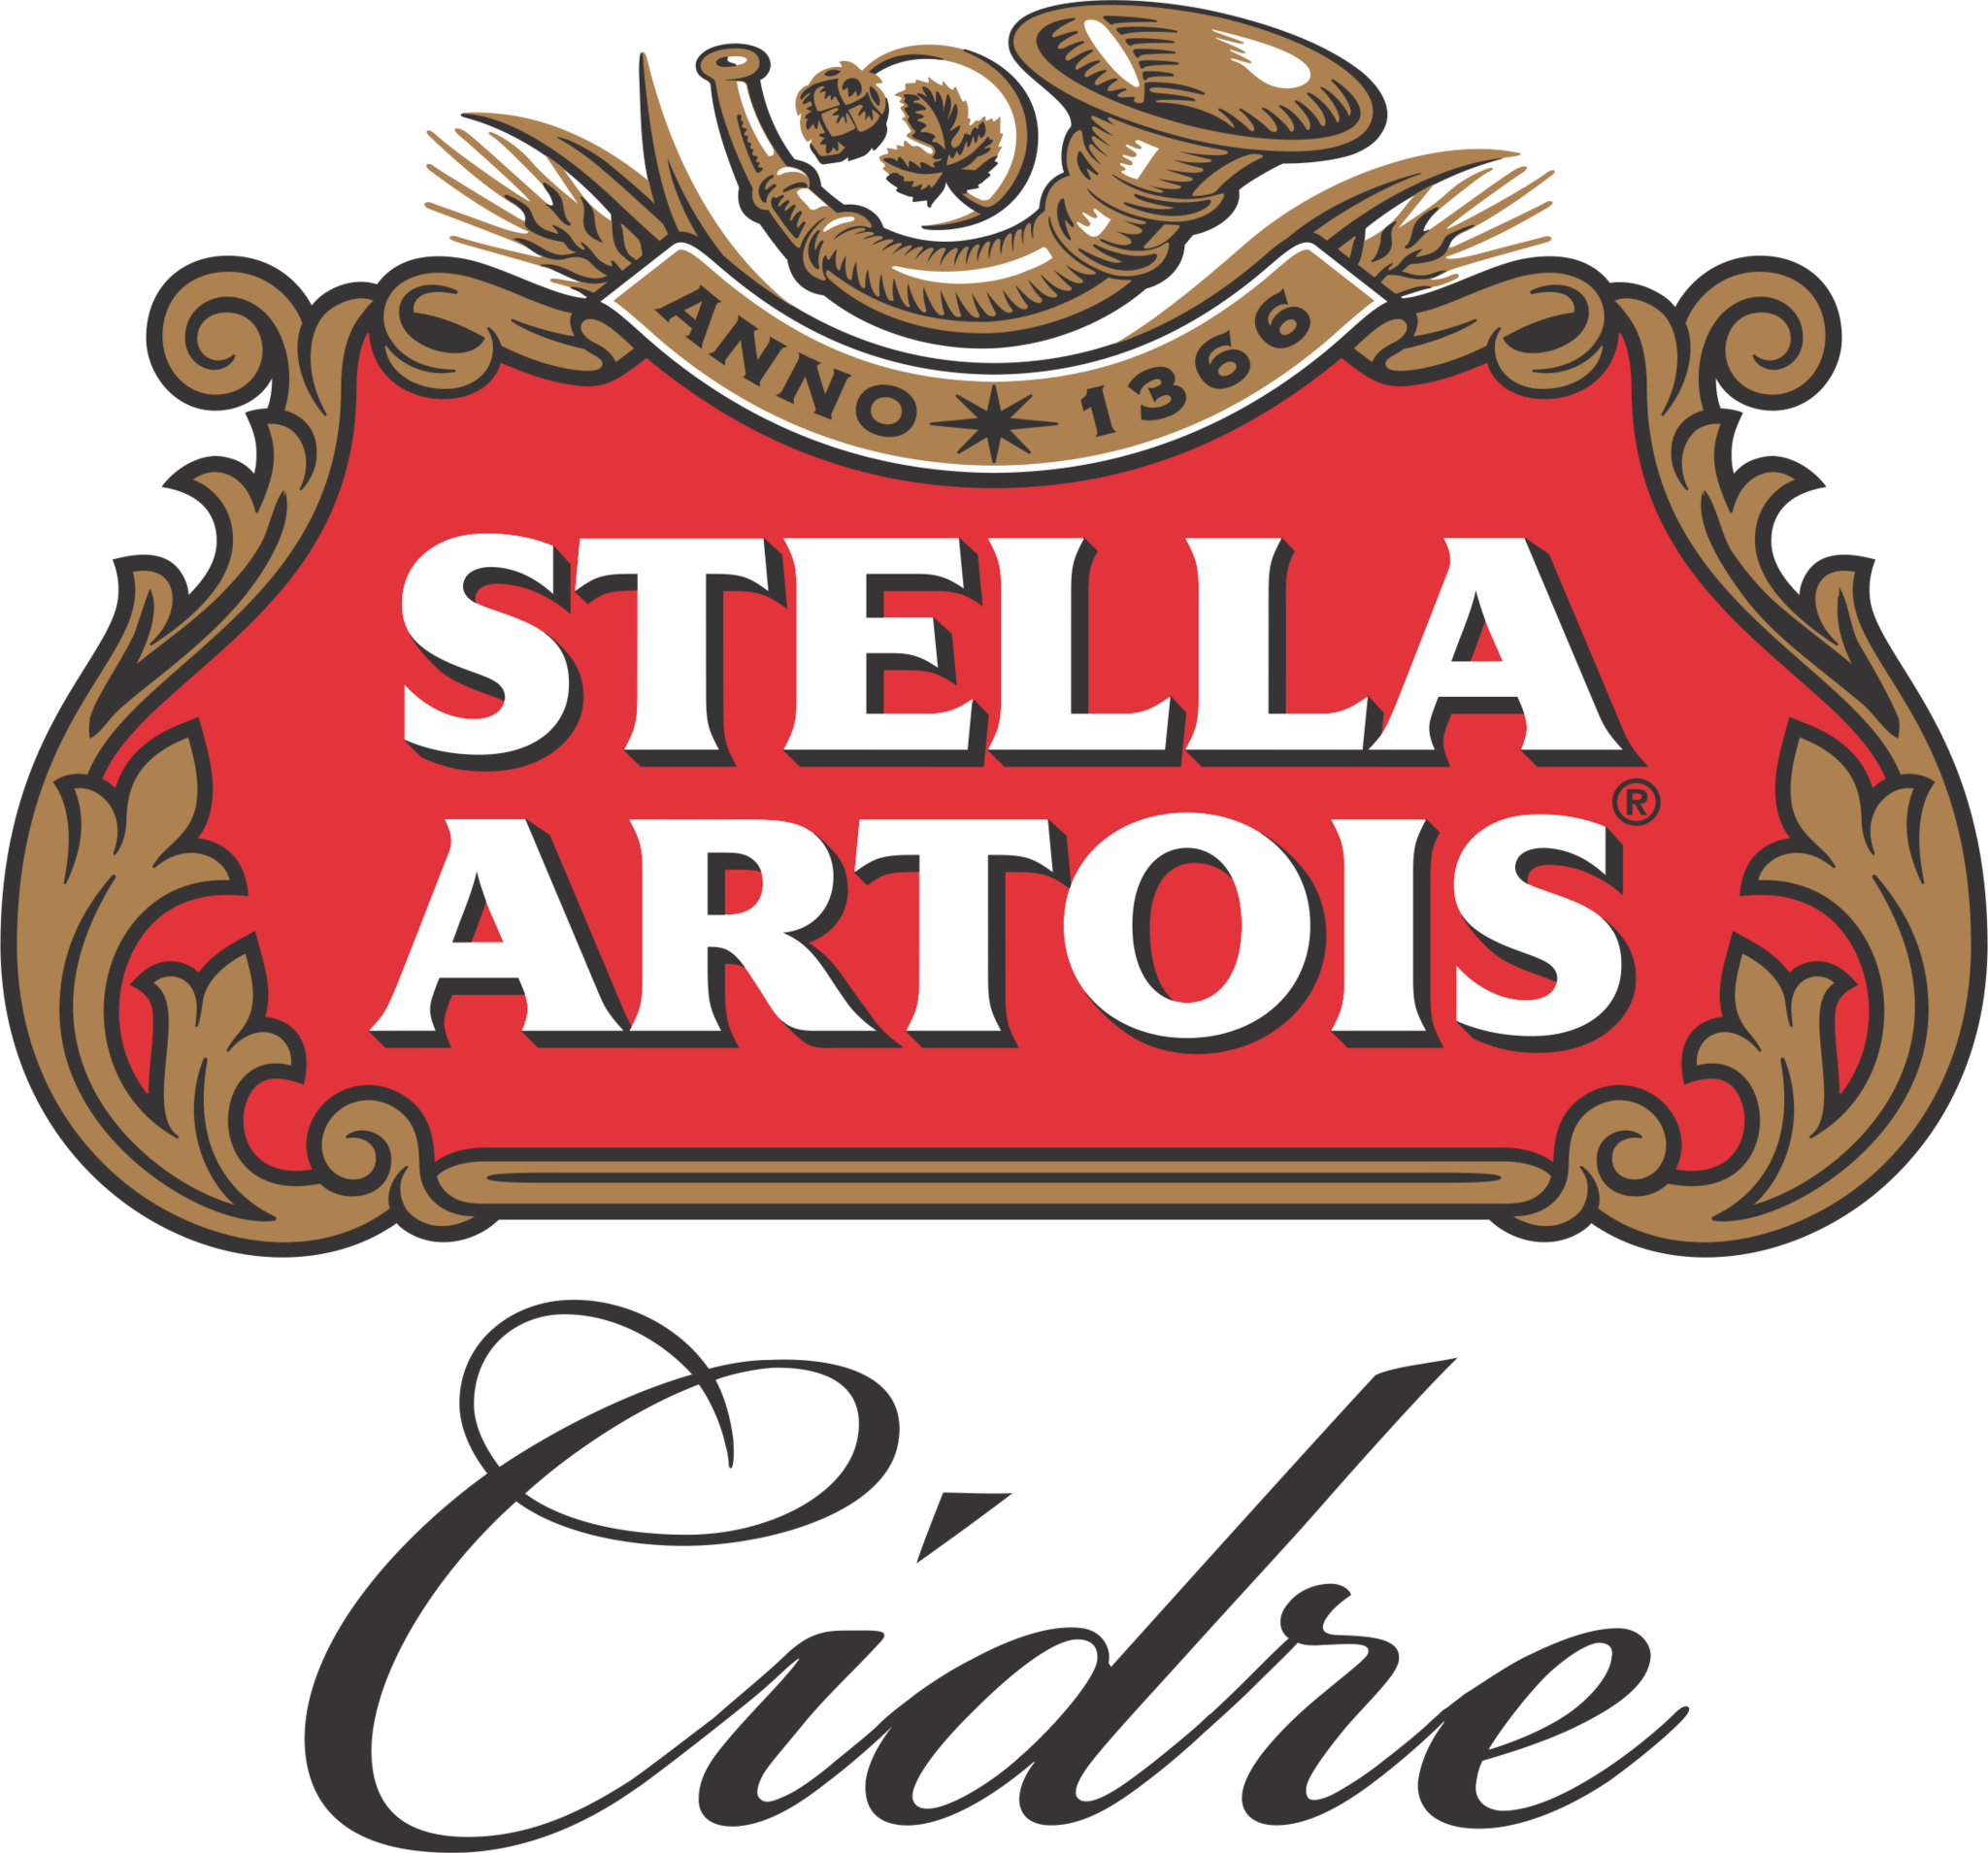 Stella Artois Cidre 6Pk